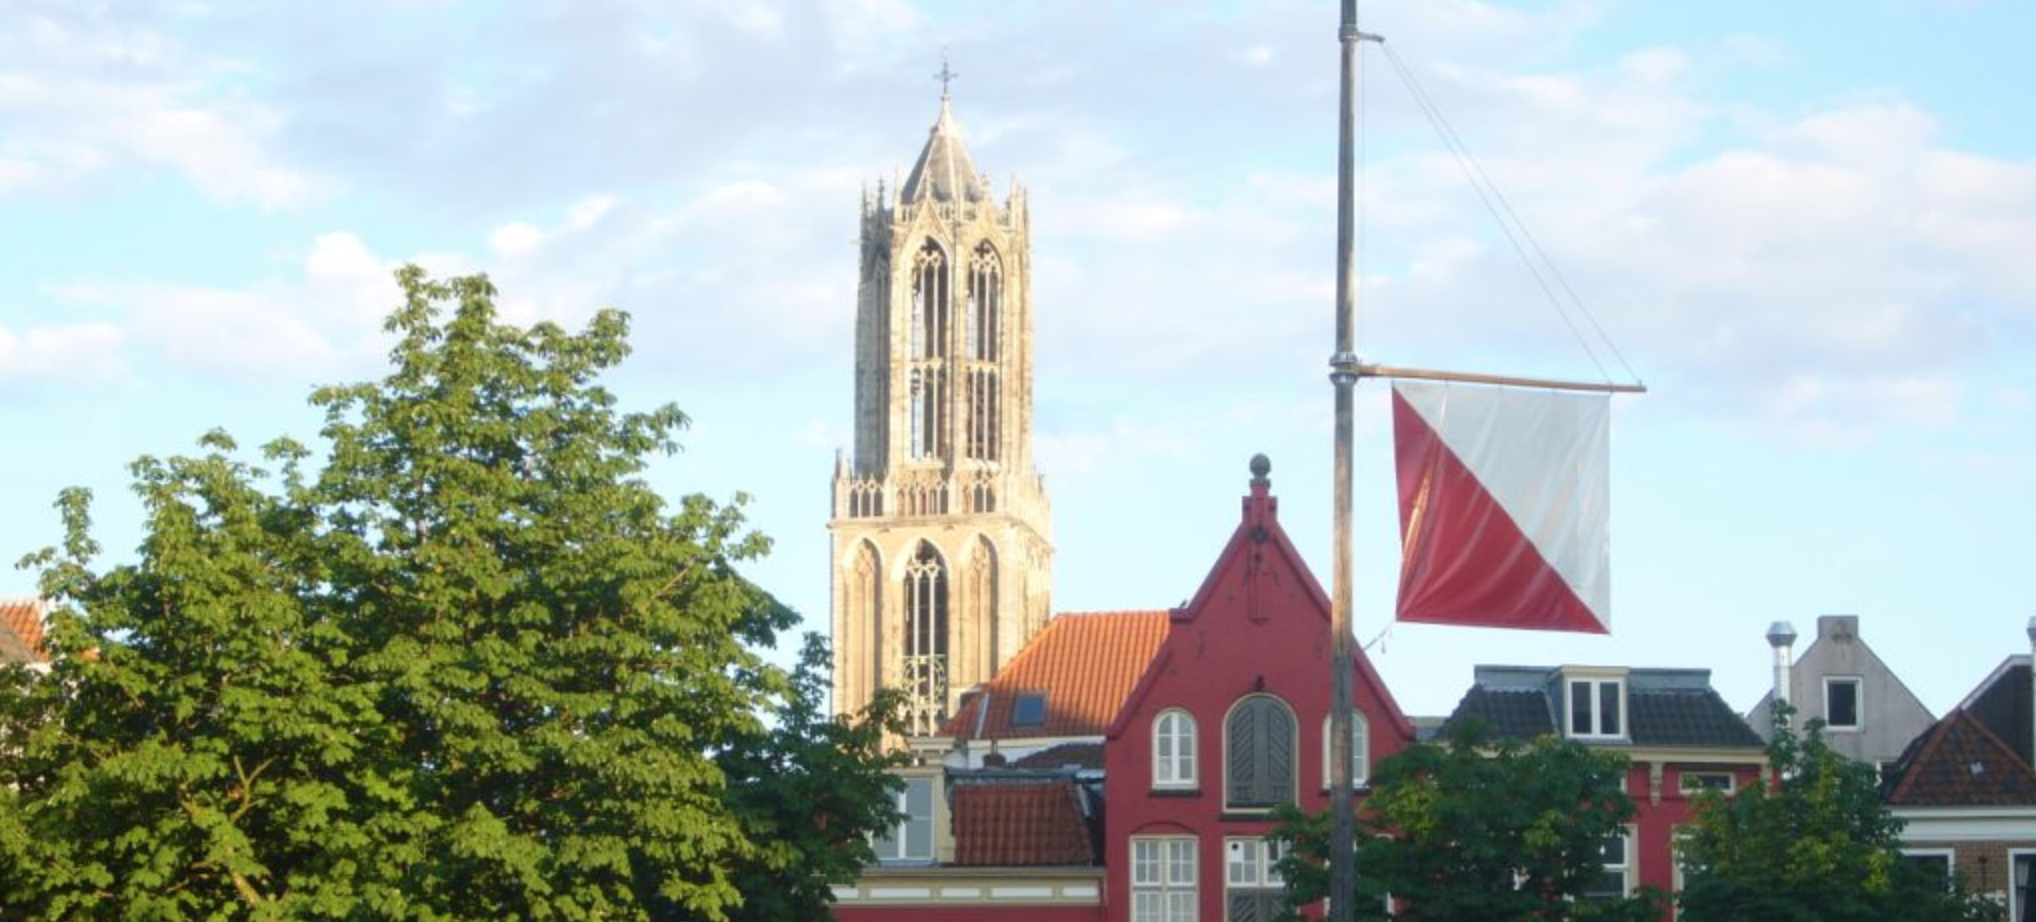 De Domtoren in Utrecht. Verhuizen naar Utrecht. Vergelijk verhuizers via ScanMovers